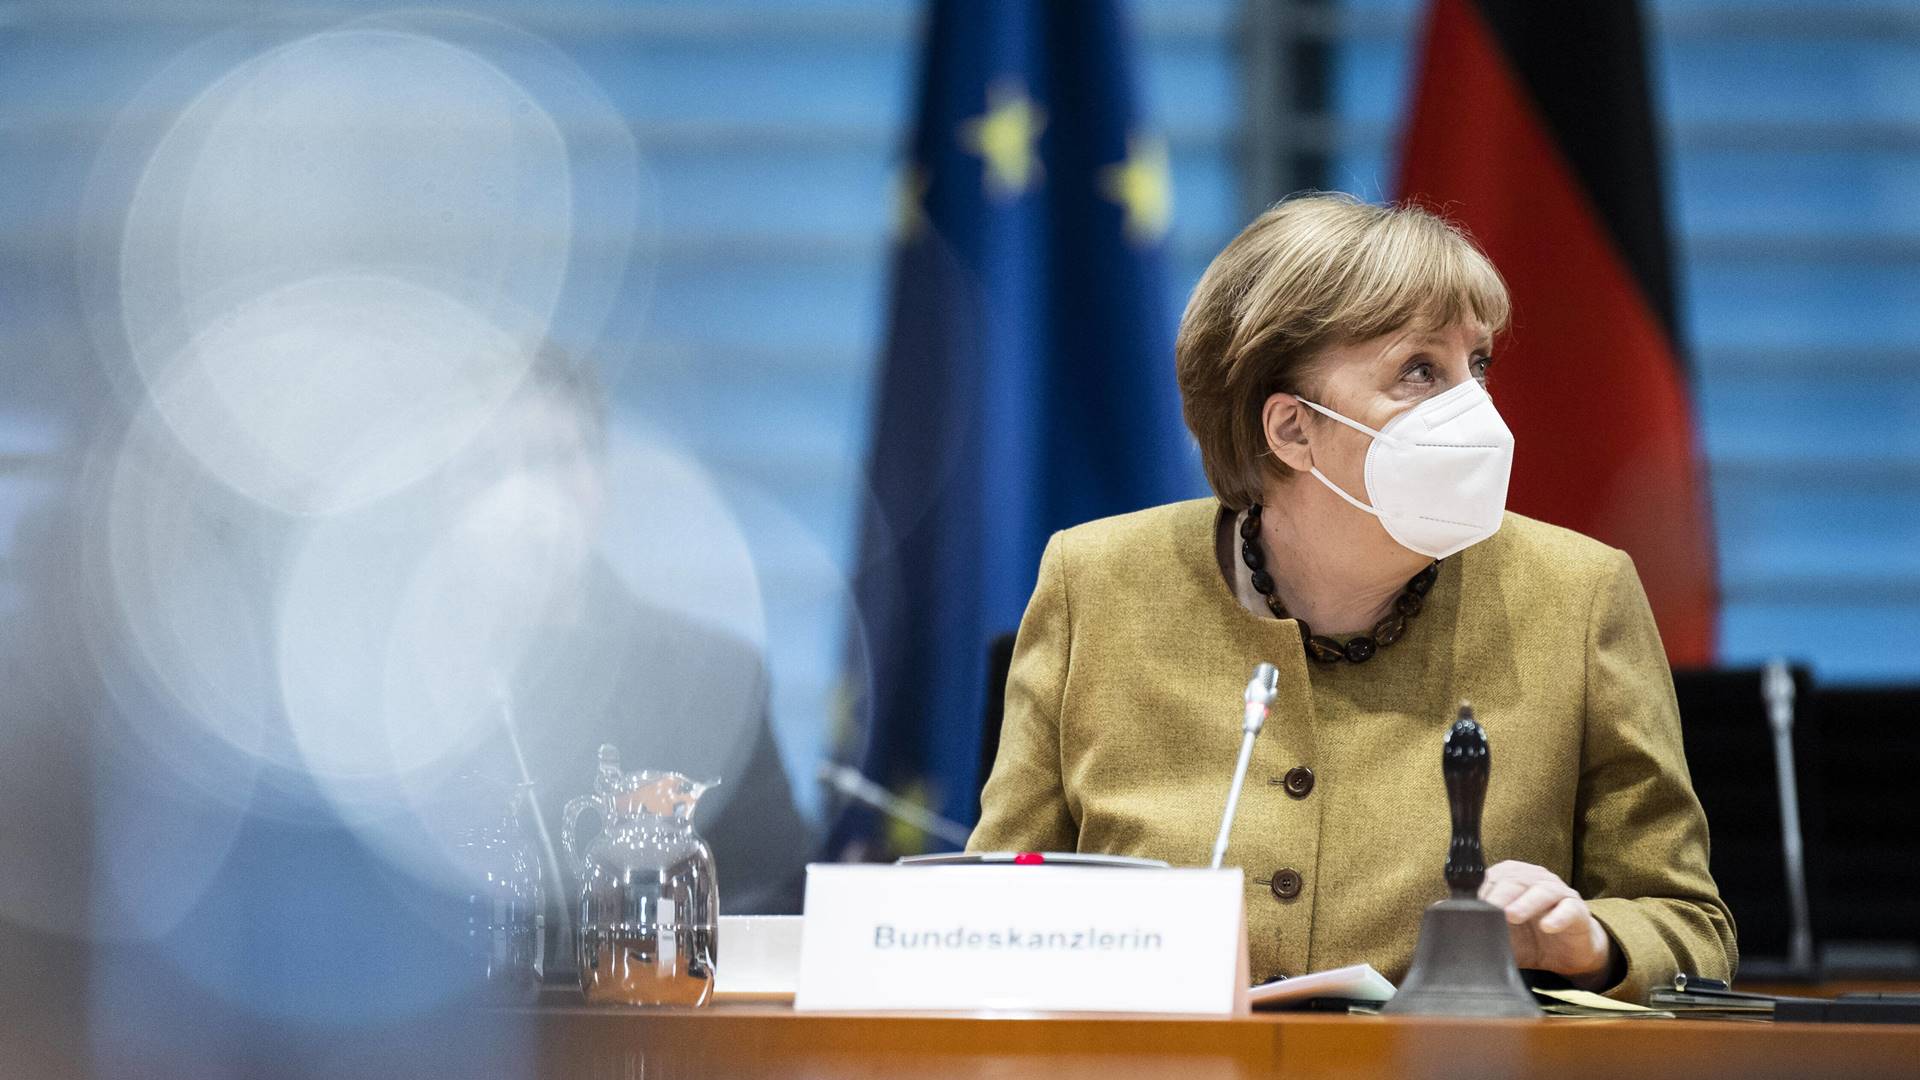 Angela Merkel aide warns of vaccine-resistant mutations